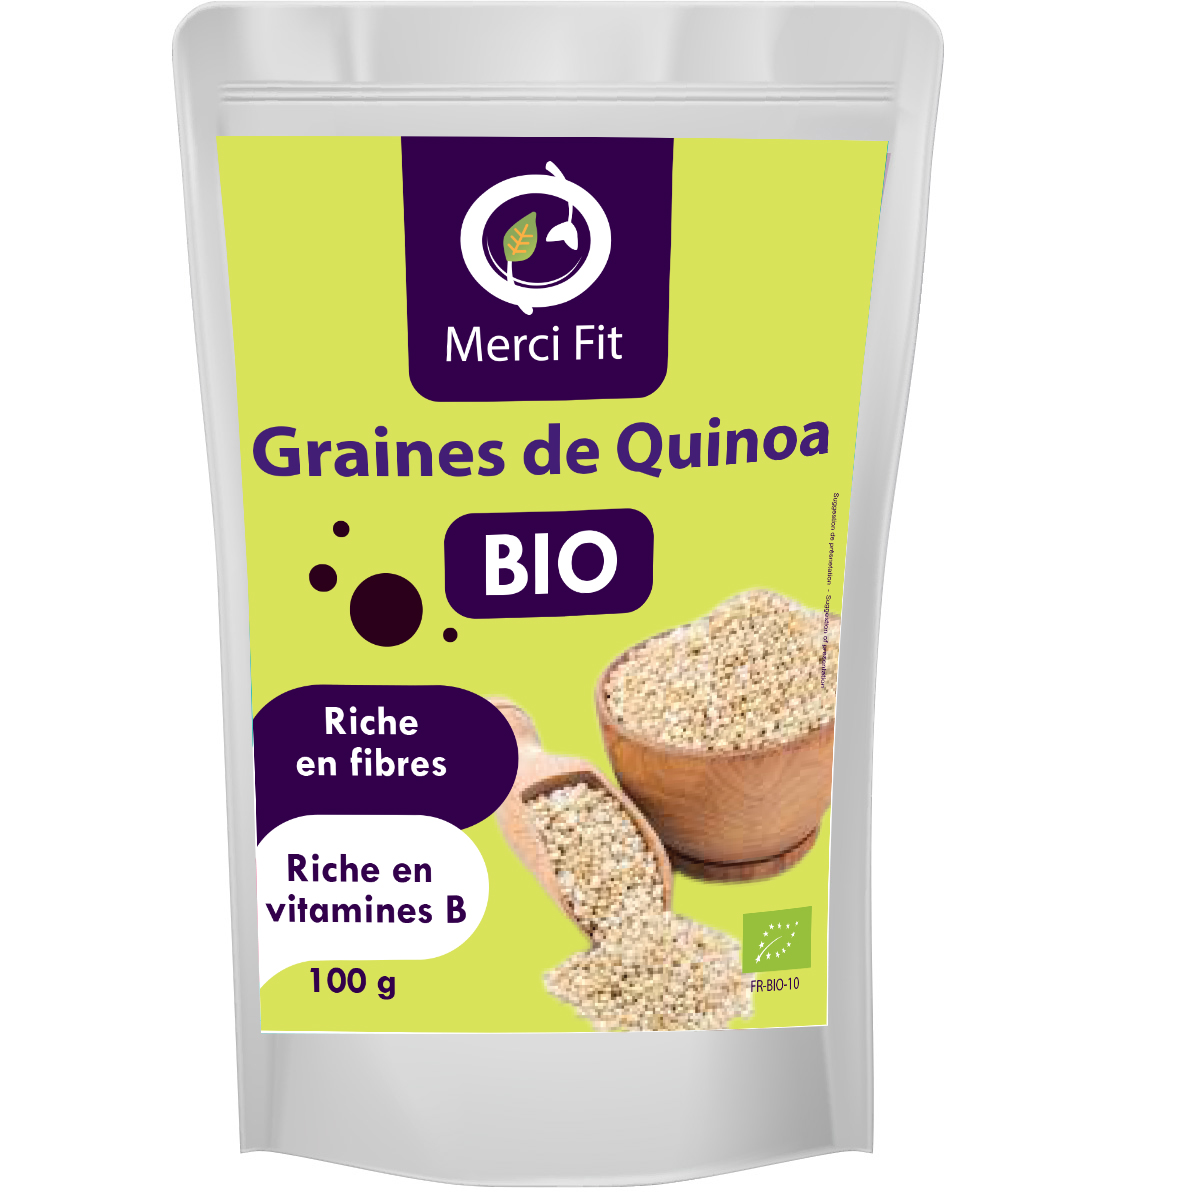 Graines de Quinoa BIO - Merci Fit Tunisie